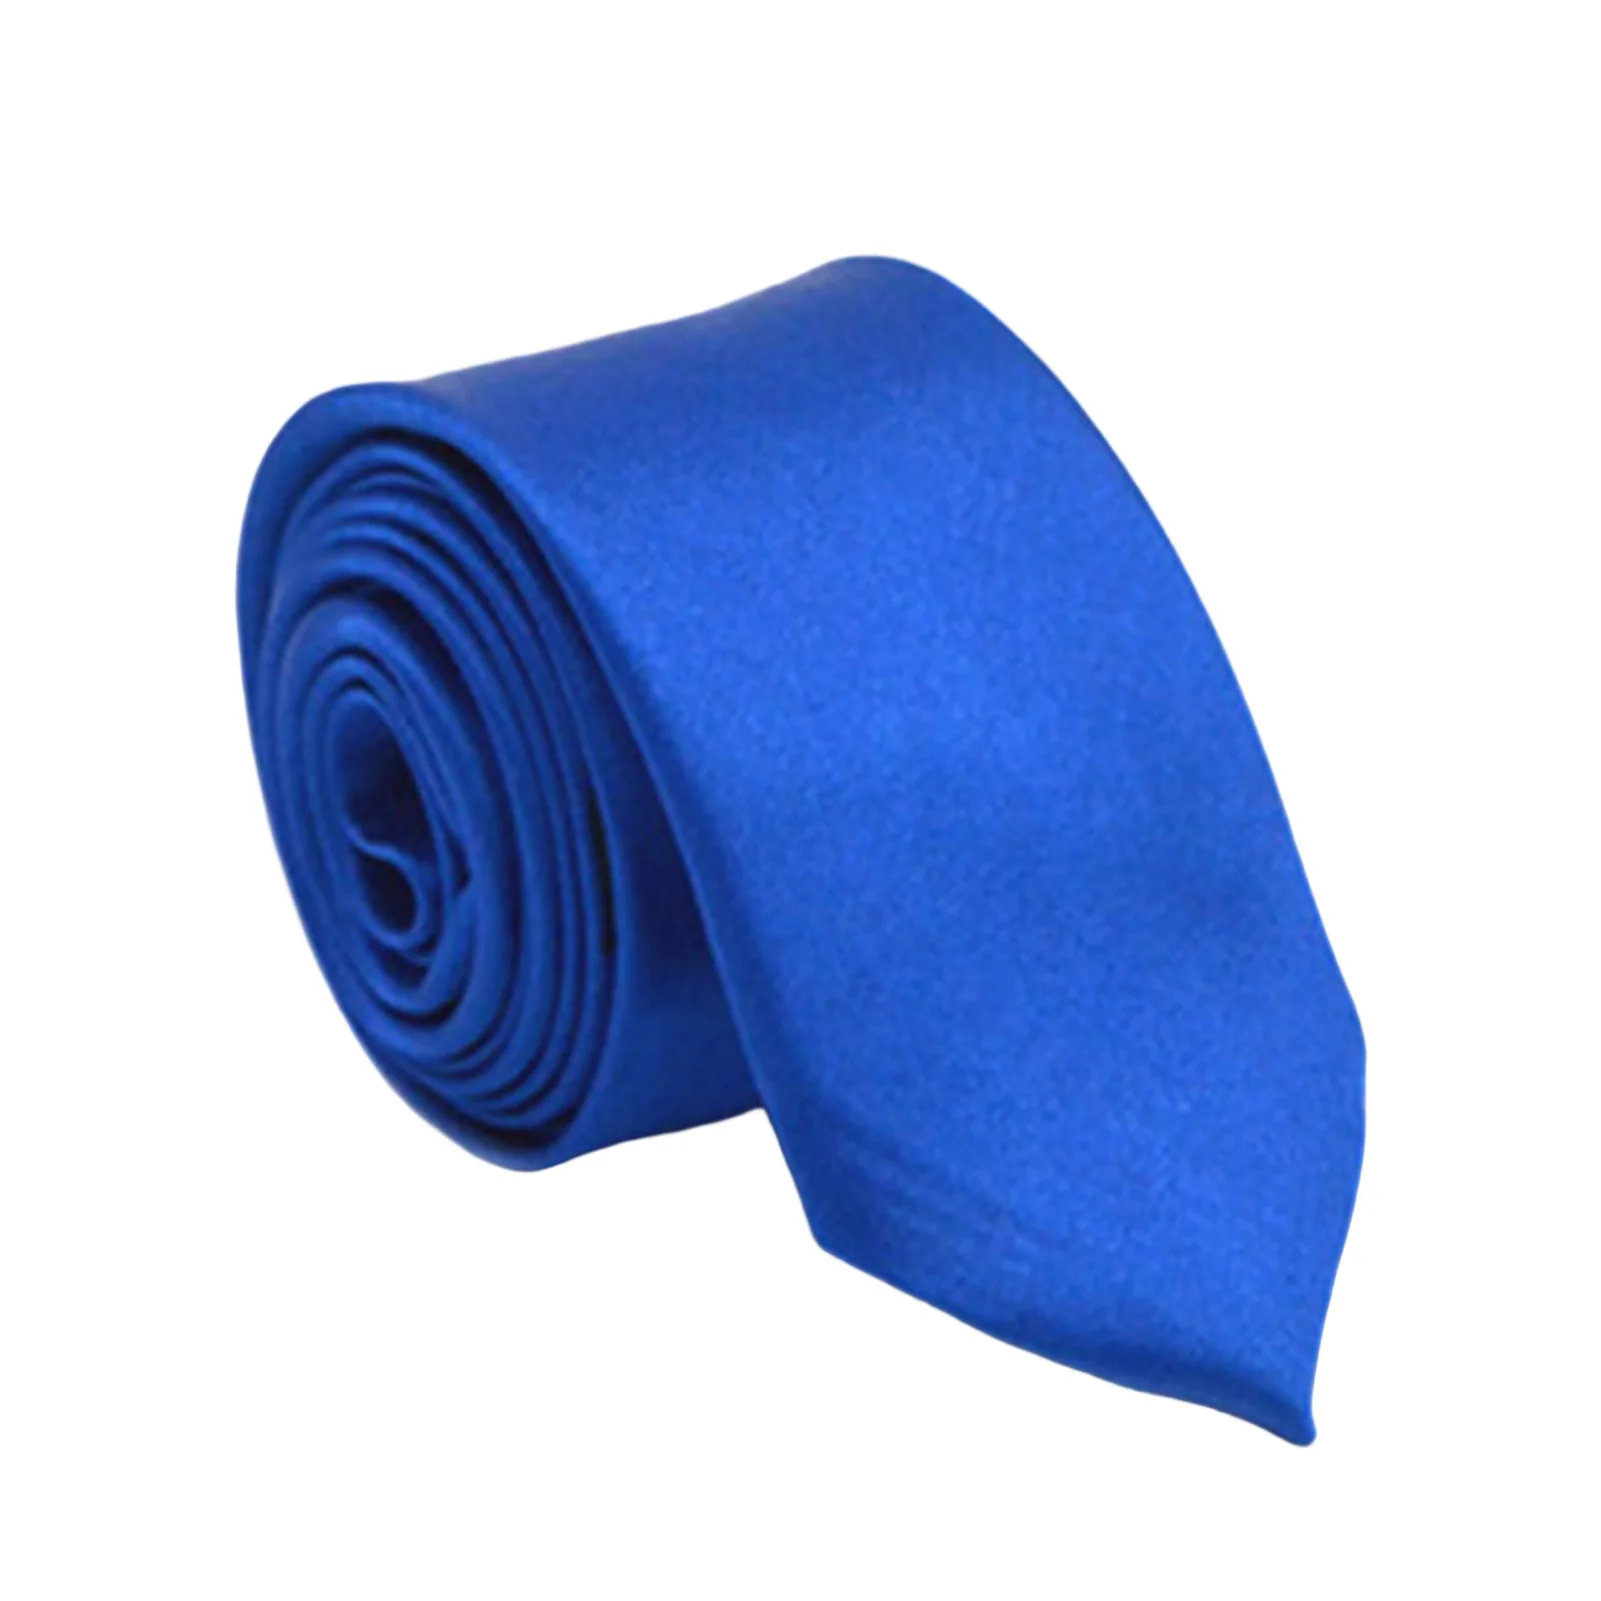 

Men's Tie Silk Neckties Formal Wedding Delicate Texture Necktie for Friend Family Gift